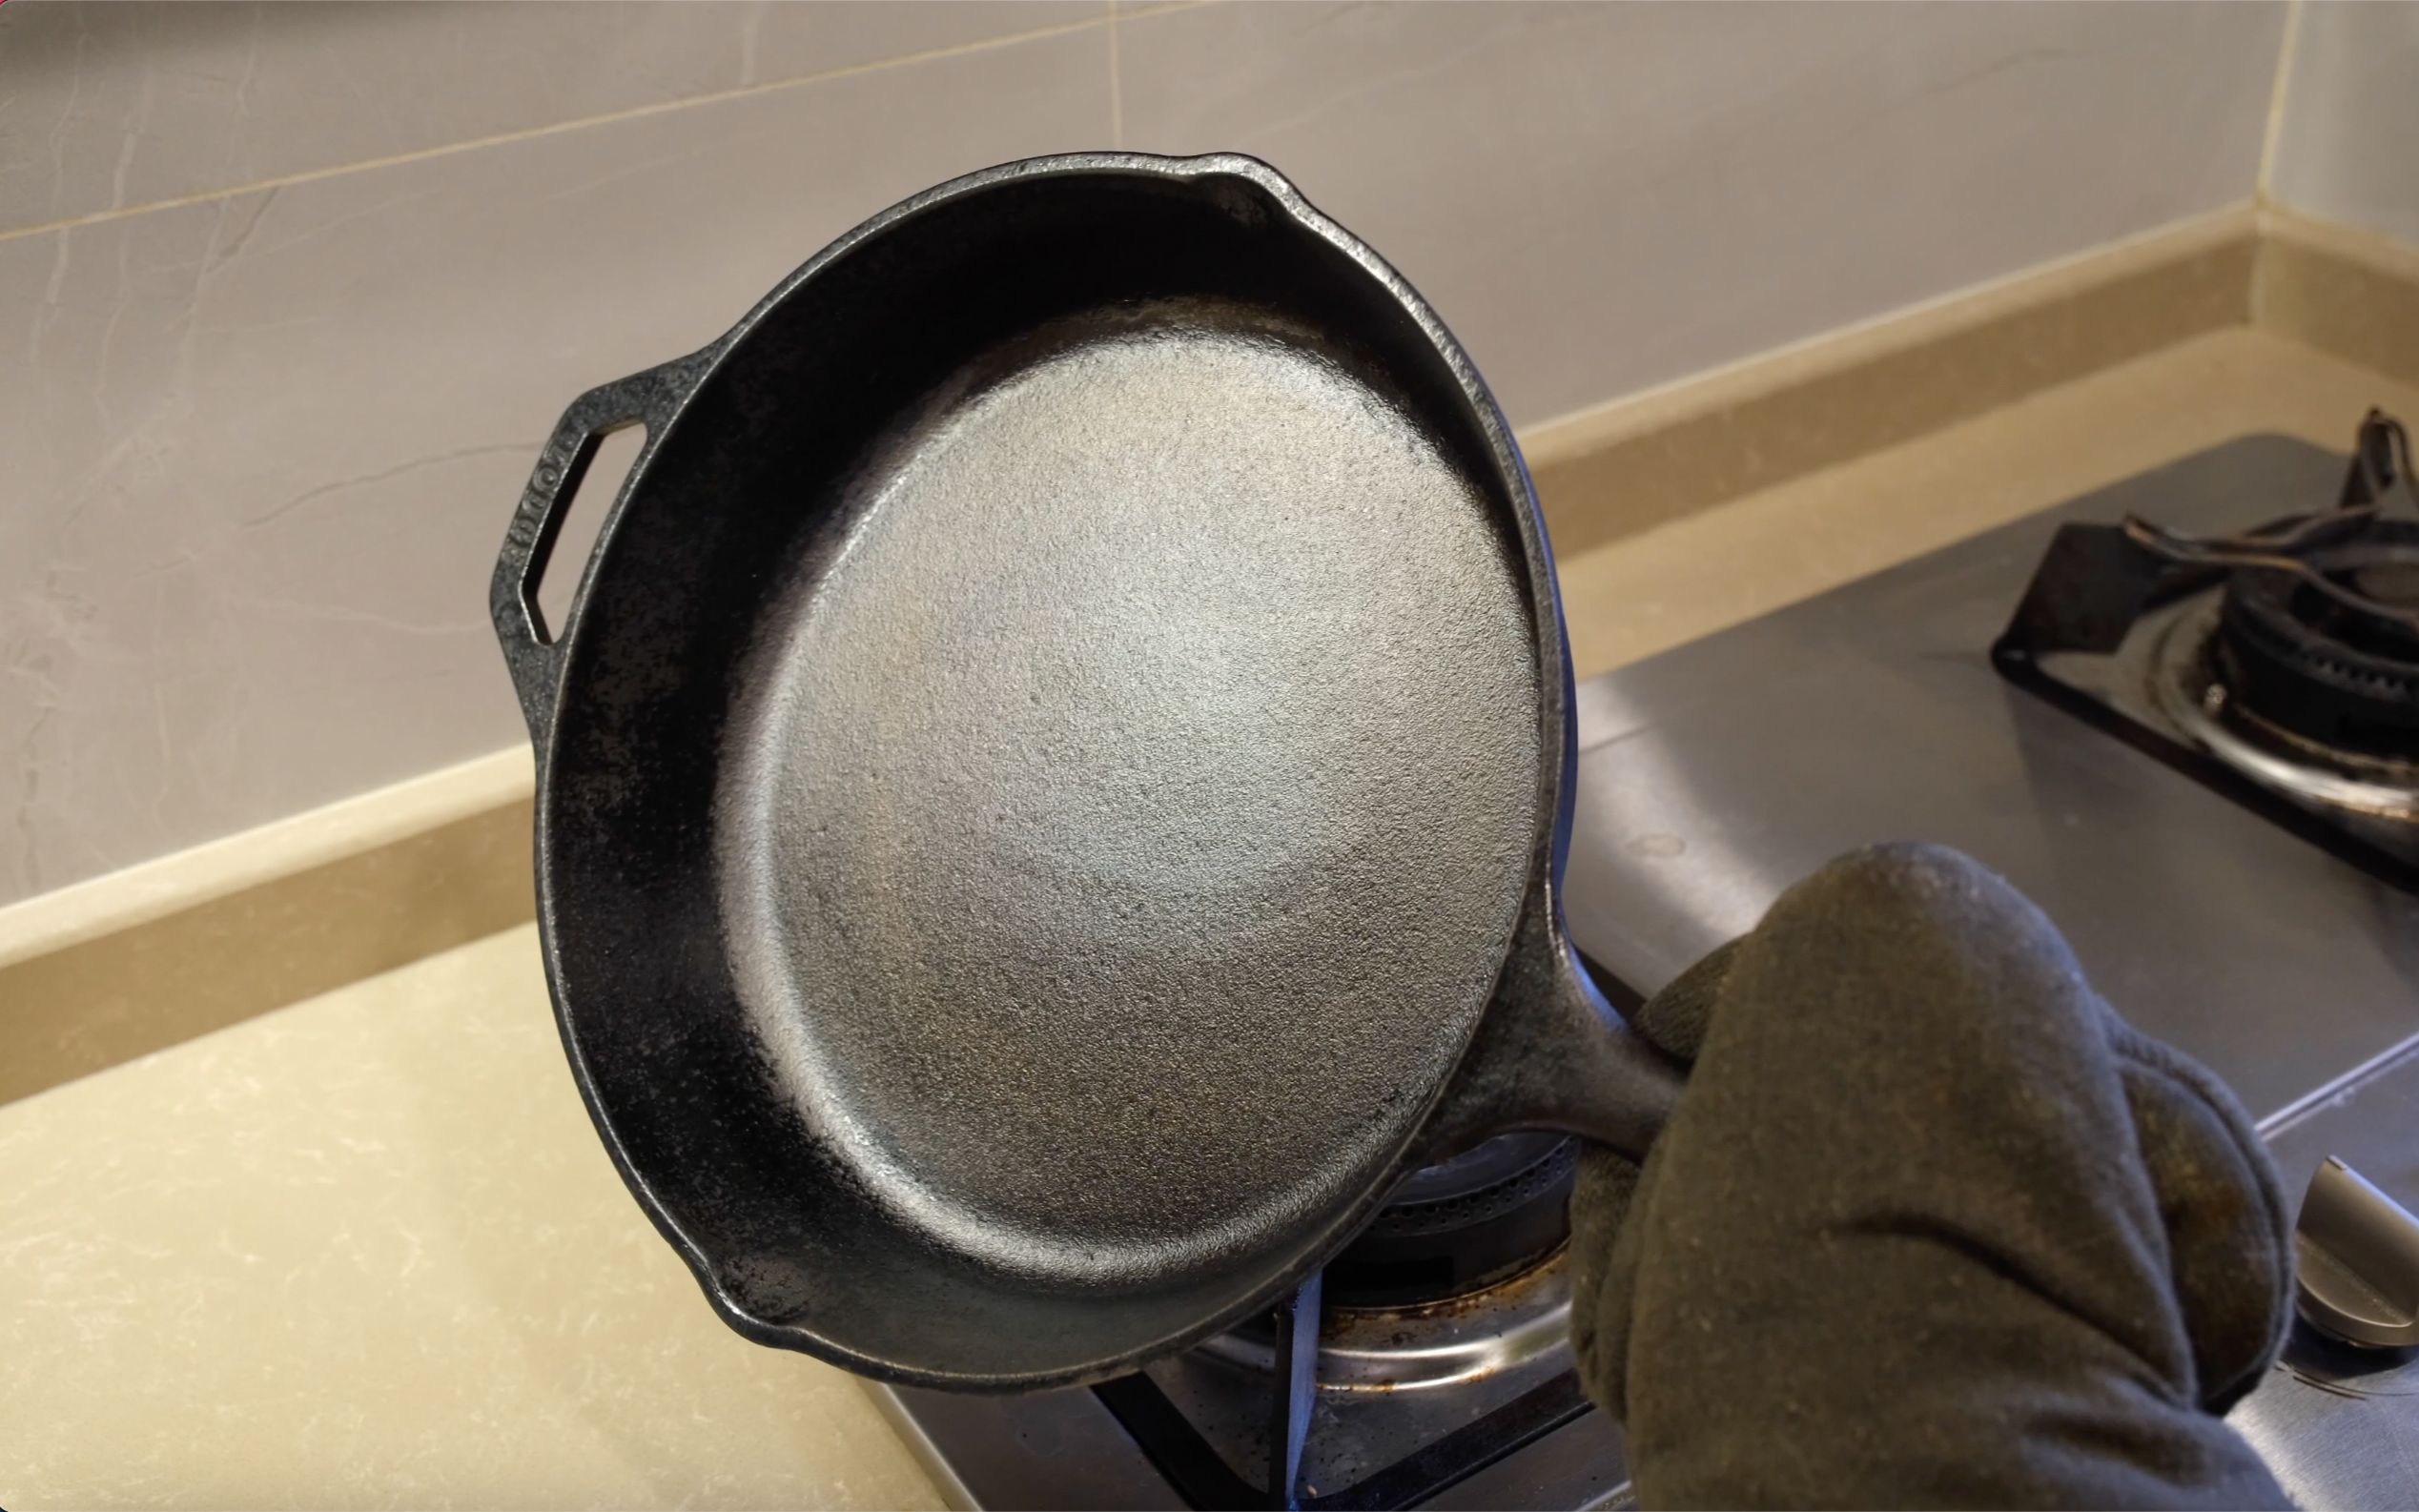 铸铁锅开锅方法图片